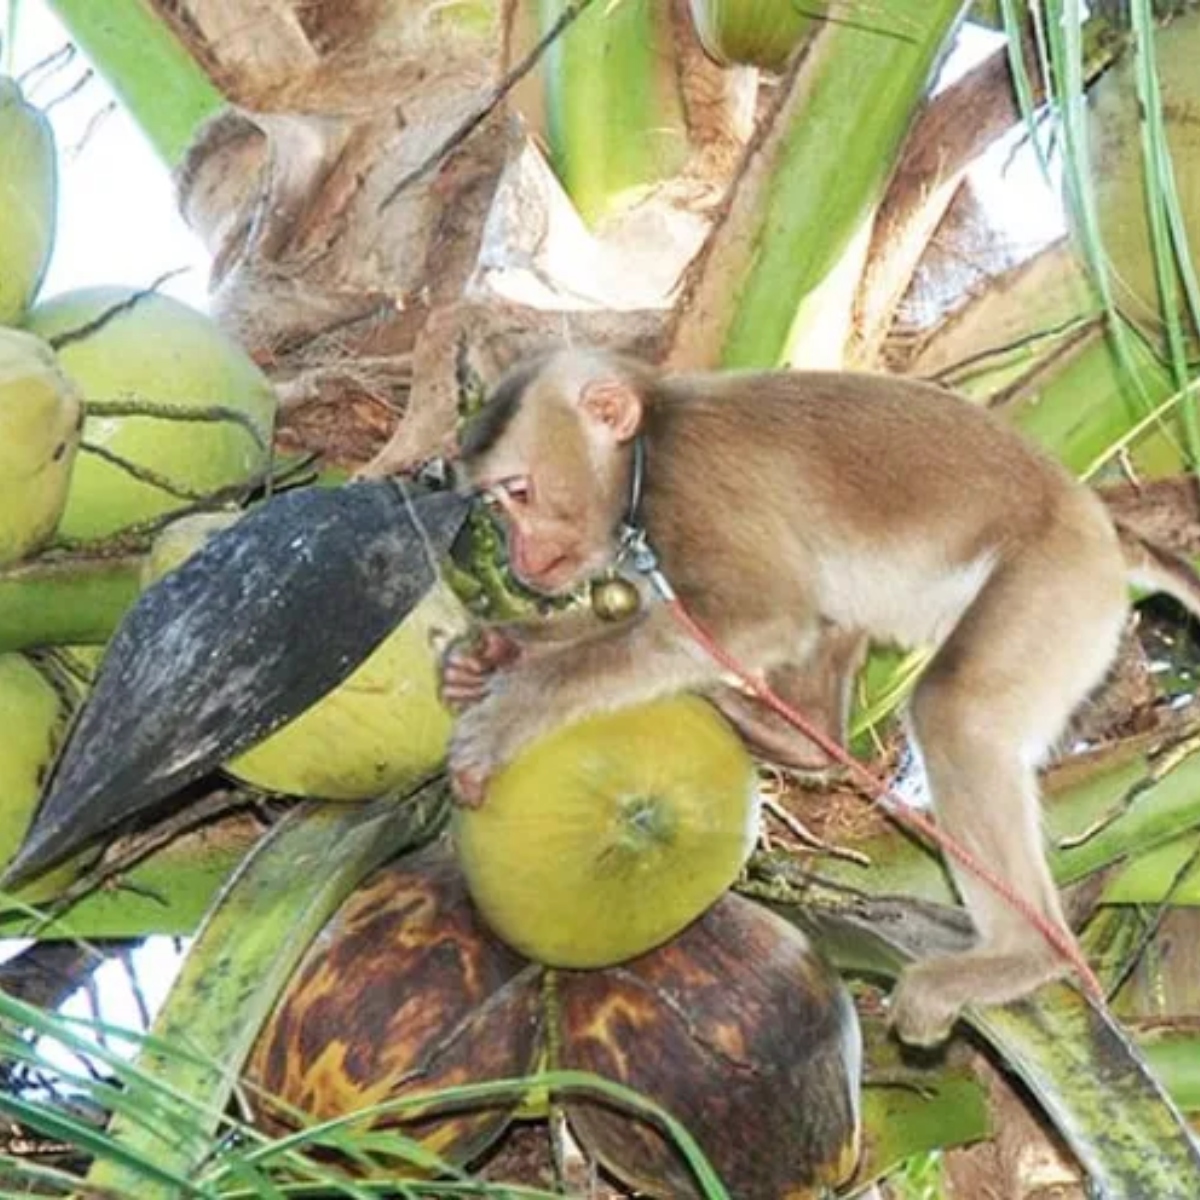  Macacos são obrigados a trabalharem acorrentados colhendo cocos 